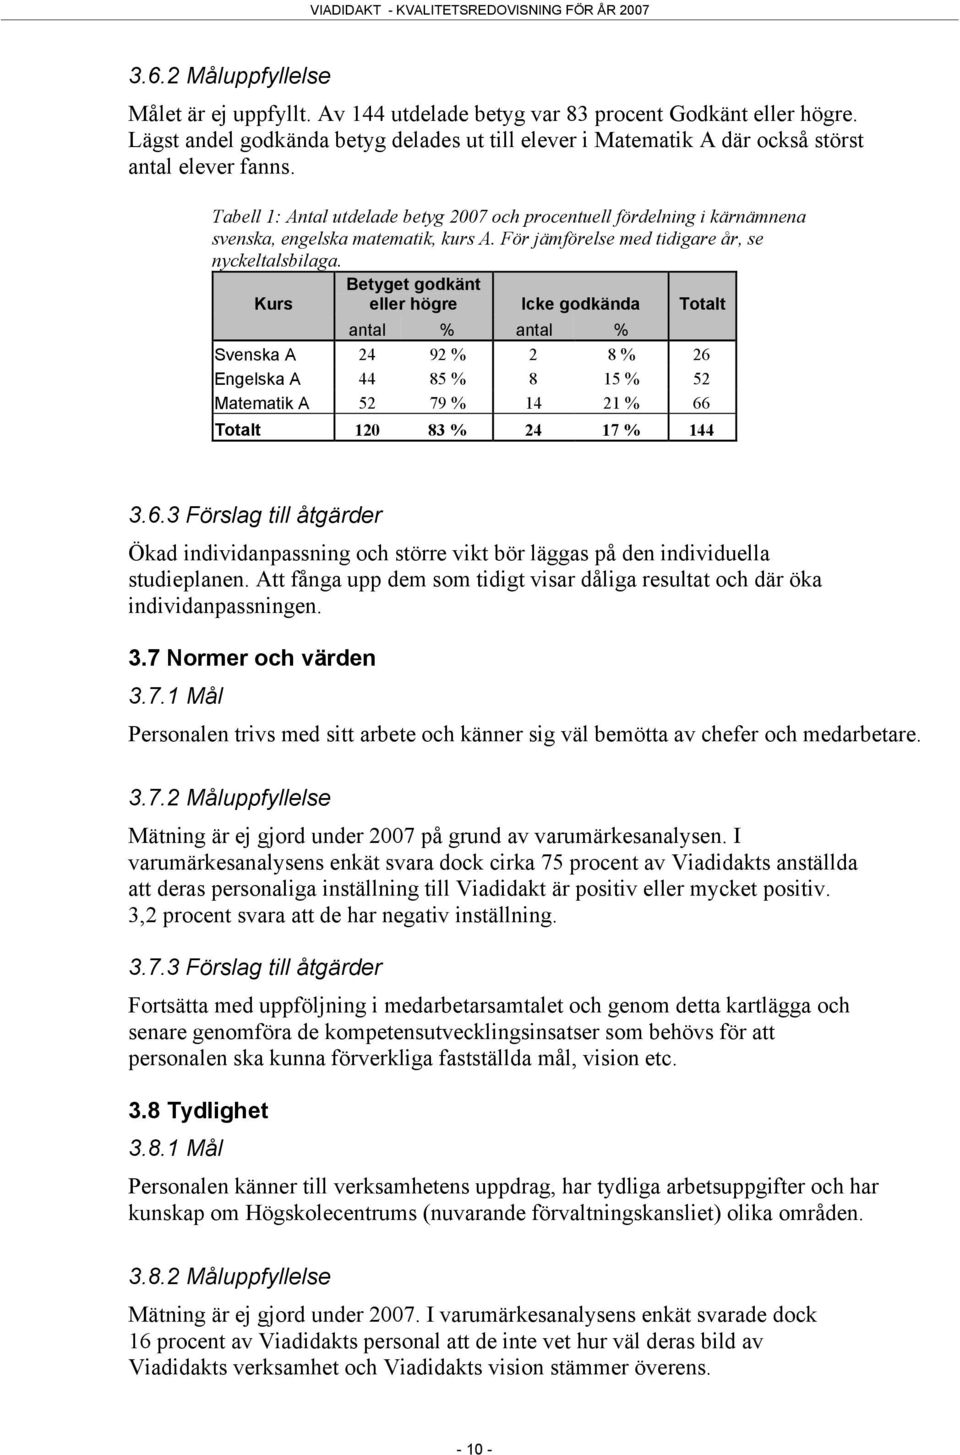 Tabell 1: Antal utdelade betyg 27 och procentuell fördelning i kärnämnena svenska, engelska matematik, kurs A. För jämförelse med tidigare år, se nyckeltalsbilaga.